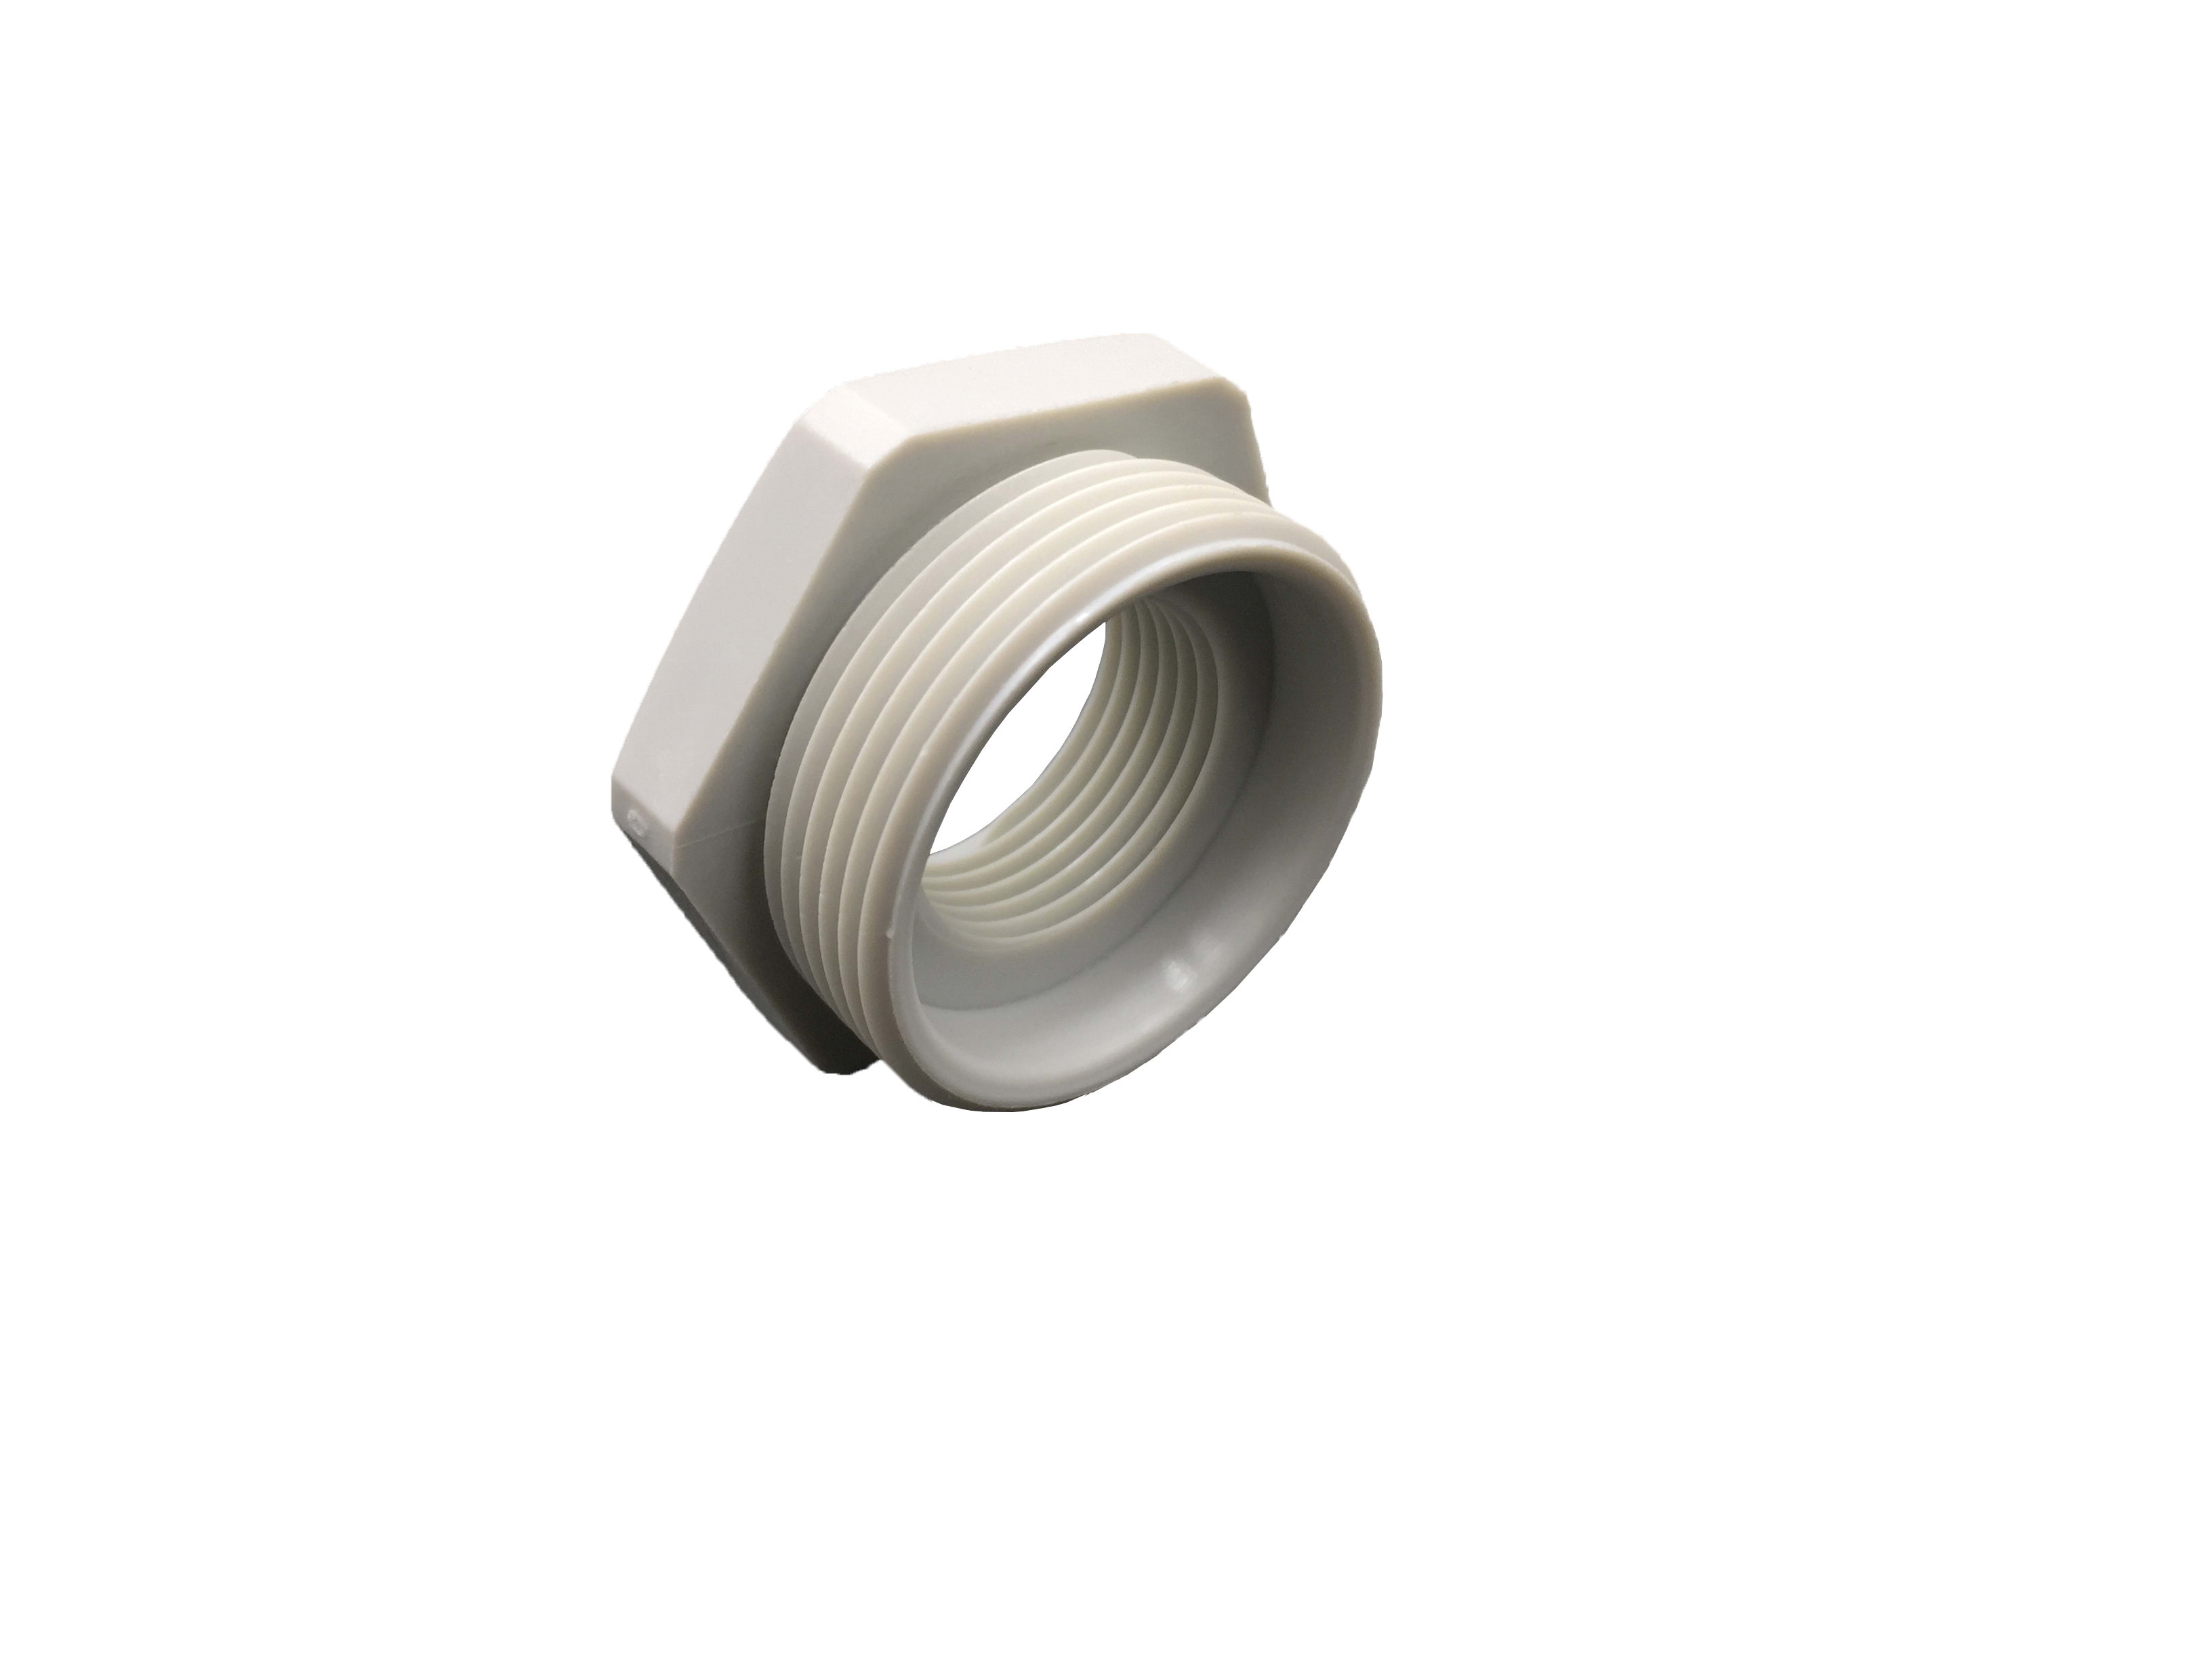 Cooper Capri - Réducteur - ISO32 / ISO25 - polyamide 6.6 gris